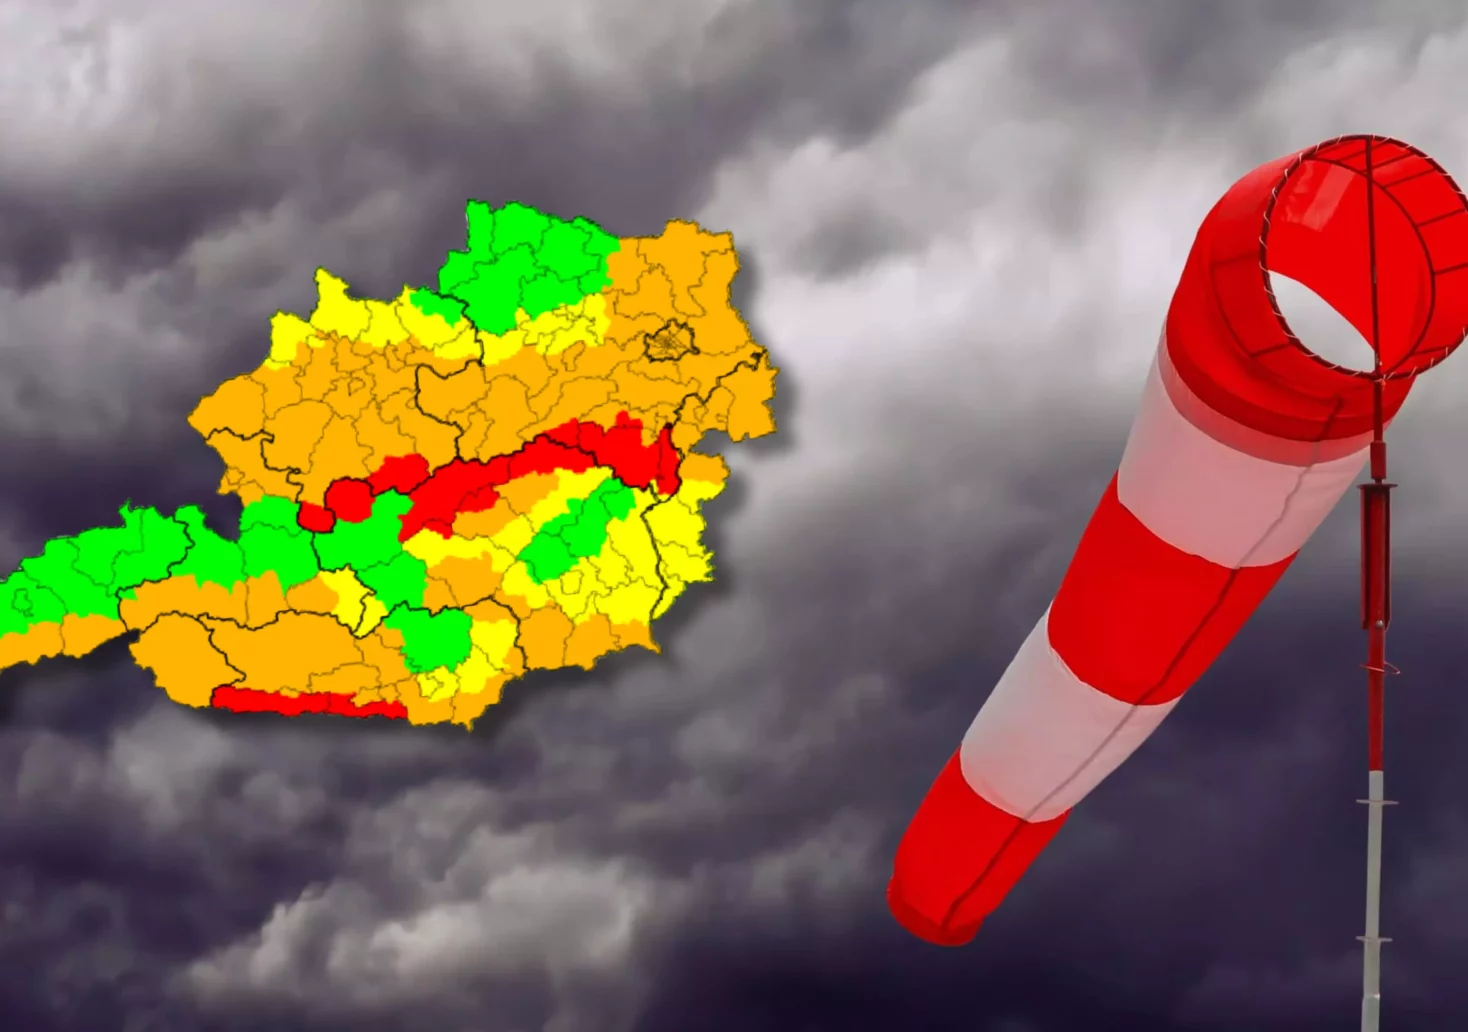 Straßensperren, Zug- und Stromausfälle: Sturm fegt durch die Steiermark